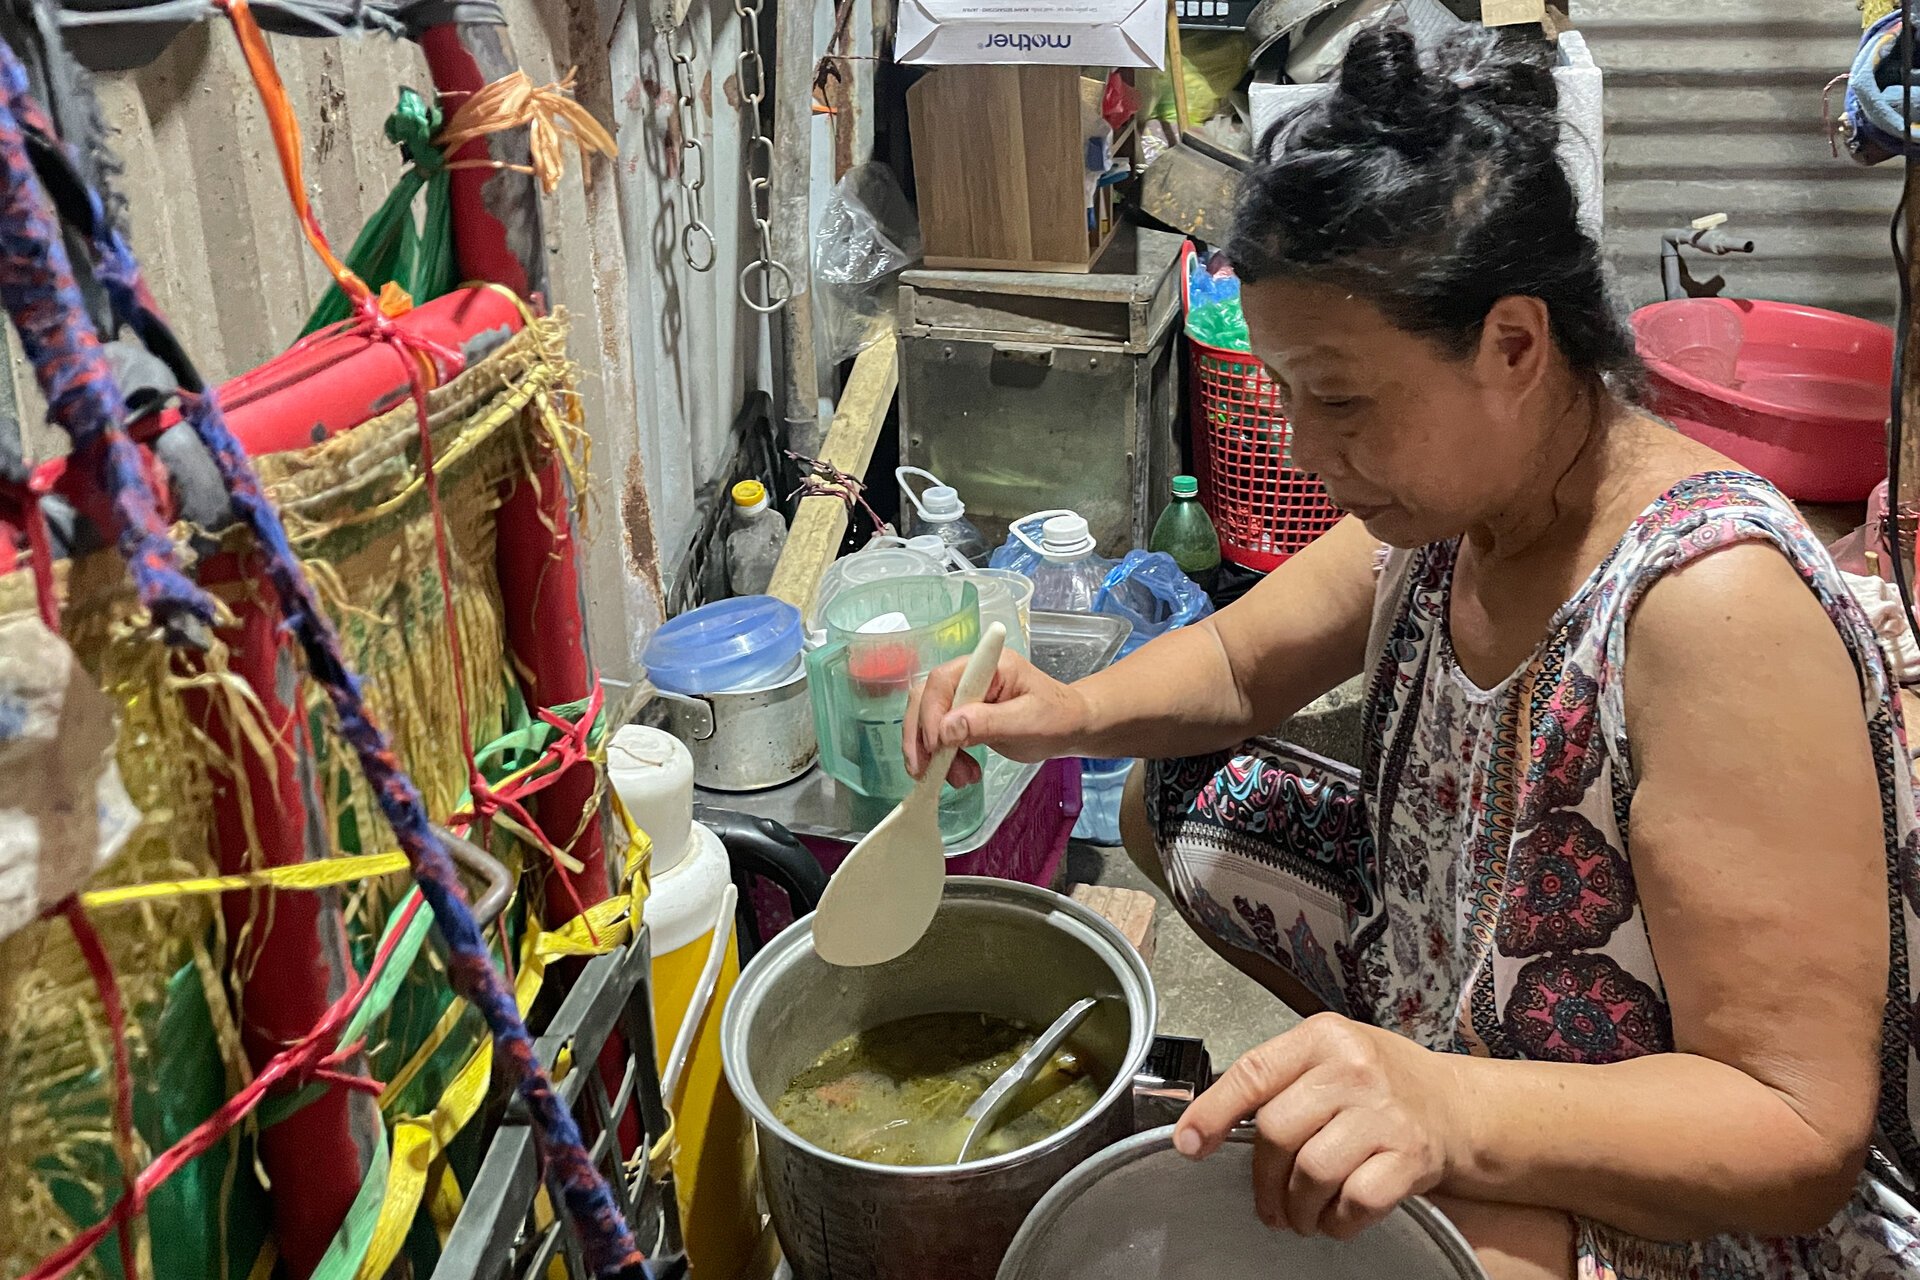 Bữa cơm khốn khó thời vật giá leo thang ở xóm trọ nghèo giữa Hà Nội - 5